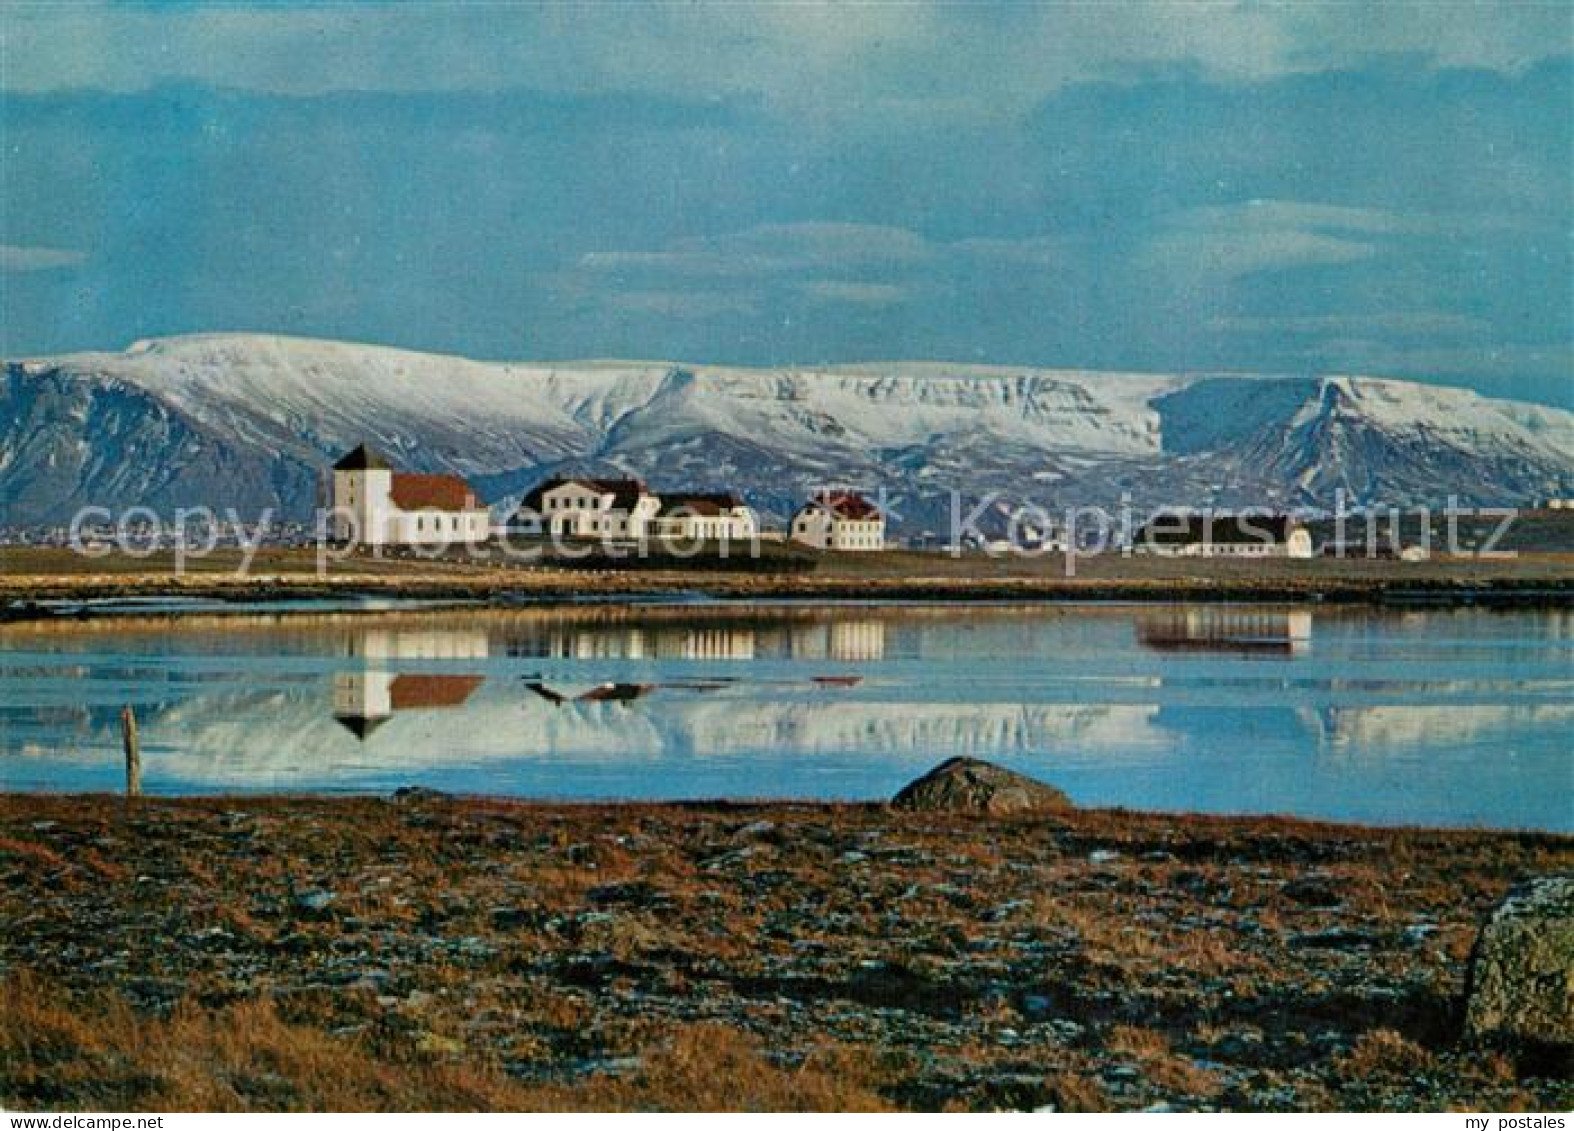 73601577 Gardabaer Bessastadir The Residence Of The President Of Iceland Mt Esja - Iceland